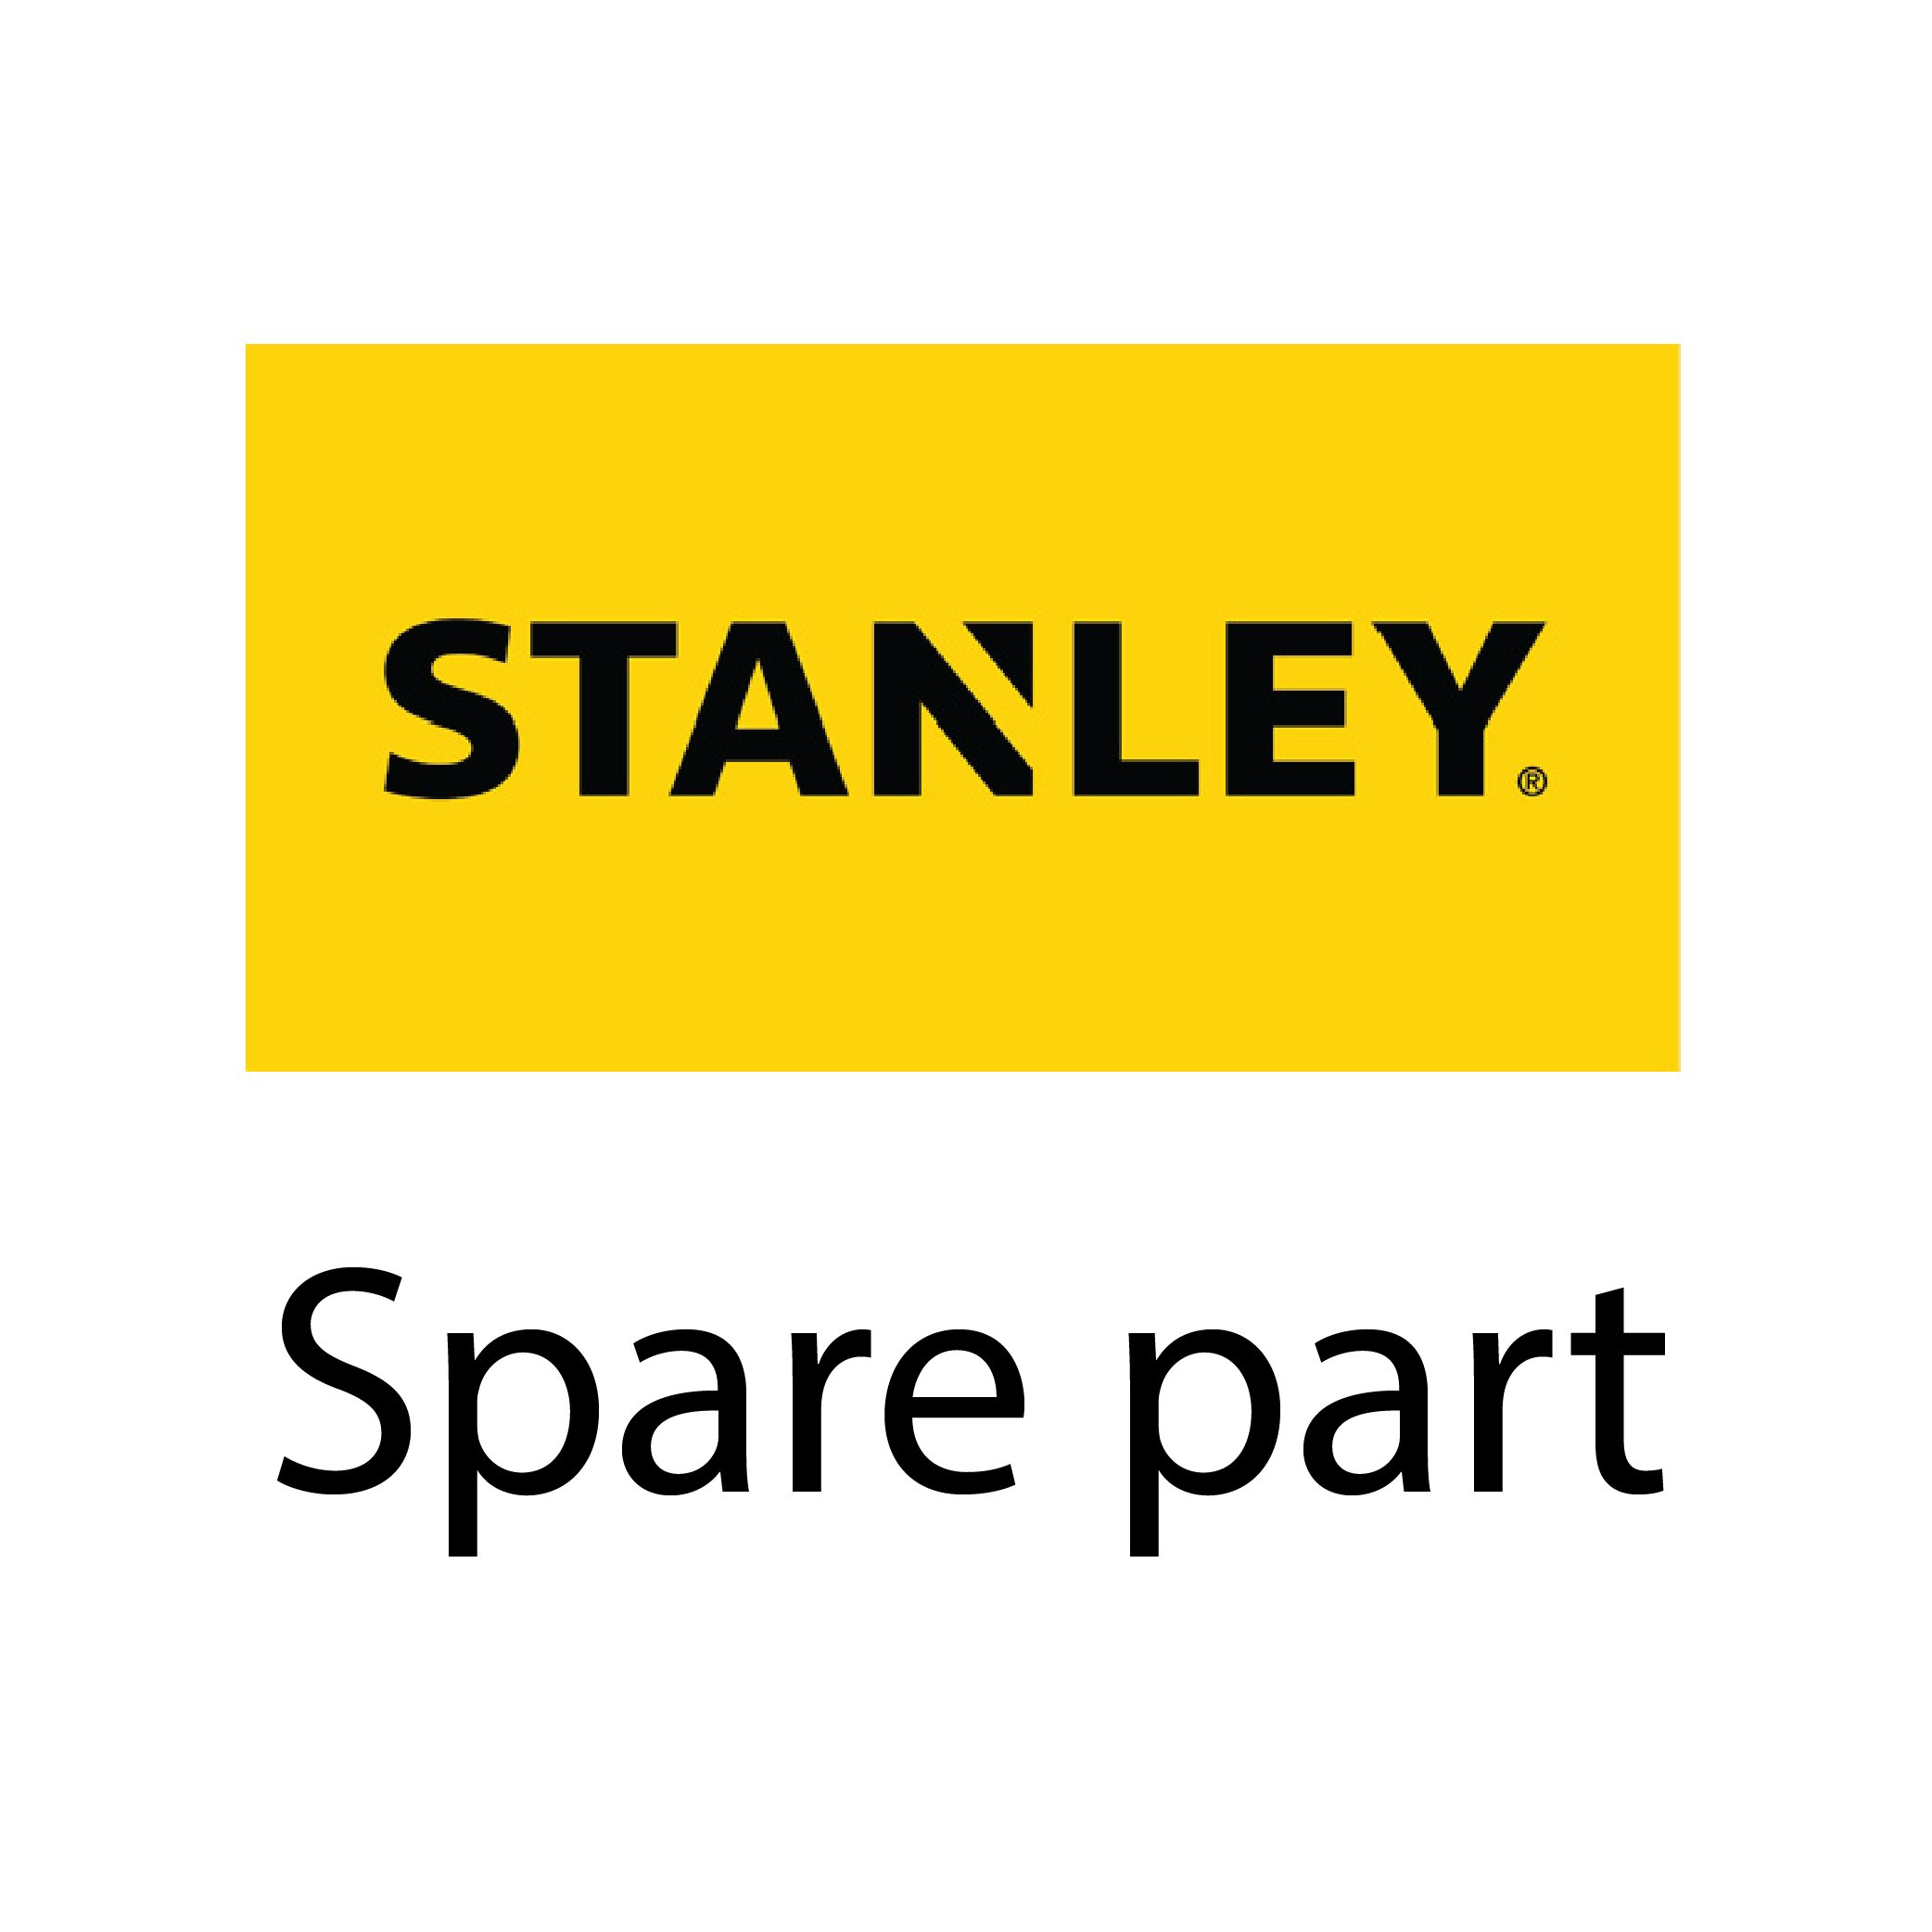 SKI - สกี จำหน่ายสินค้าหลากหลาย และคุณภาพดี | STANLEY #29-861-0 ปลอก(อะไหล่)ลูกกลิ้งสี 7นิ้ว ขนสั้น (29-054)  ลังละ36ลูก (Exthai)